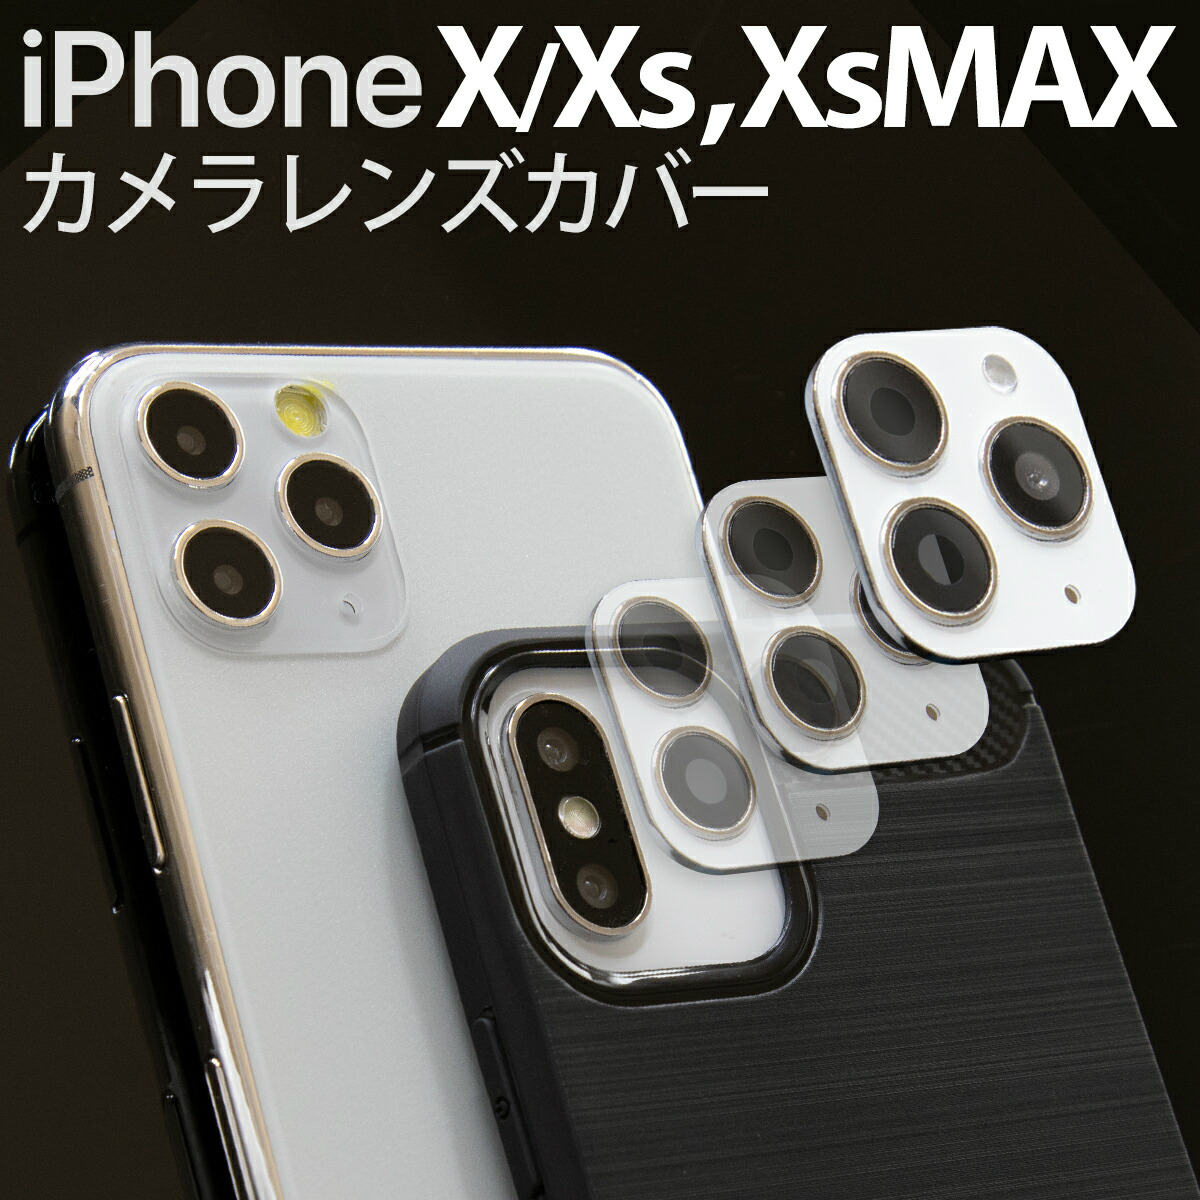 【最大30%offクーポン】 iPhoneX ガラスフィルム iPhoneXs iPhoneXs Max レンズ カバー カメラレンズカバー iPhone11Pro iPhone11ProMax 擬態 変身 おもしろ オシャレ カッコつける sale カメラフィルム